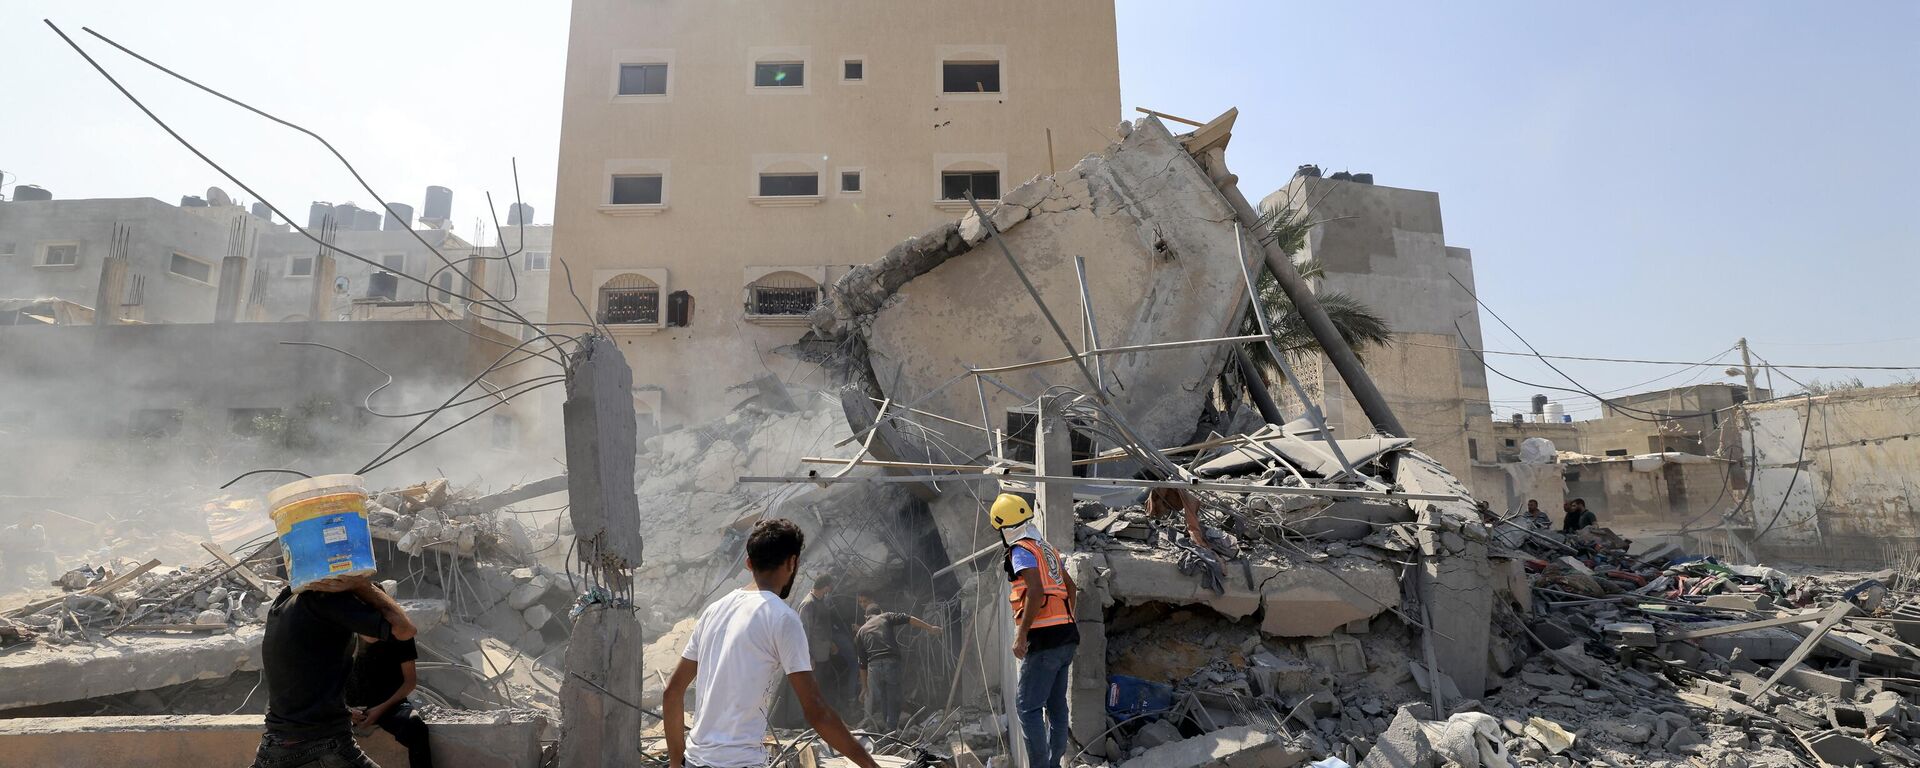 Палестинцы осматривают обломки рухнувшего здания после израильского удара в Хан-Юнисе на юге сектора Газа, 14 октября 2023 года - Sputnik Абхазия, 1920, 20.10.2023